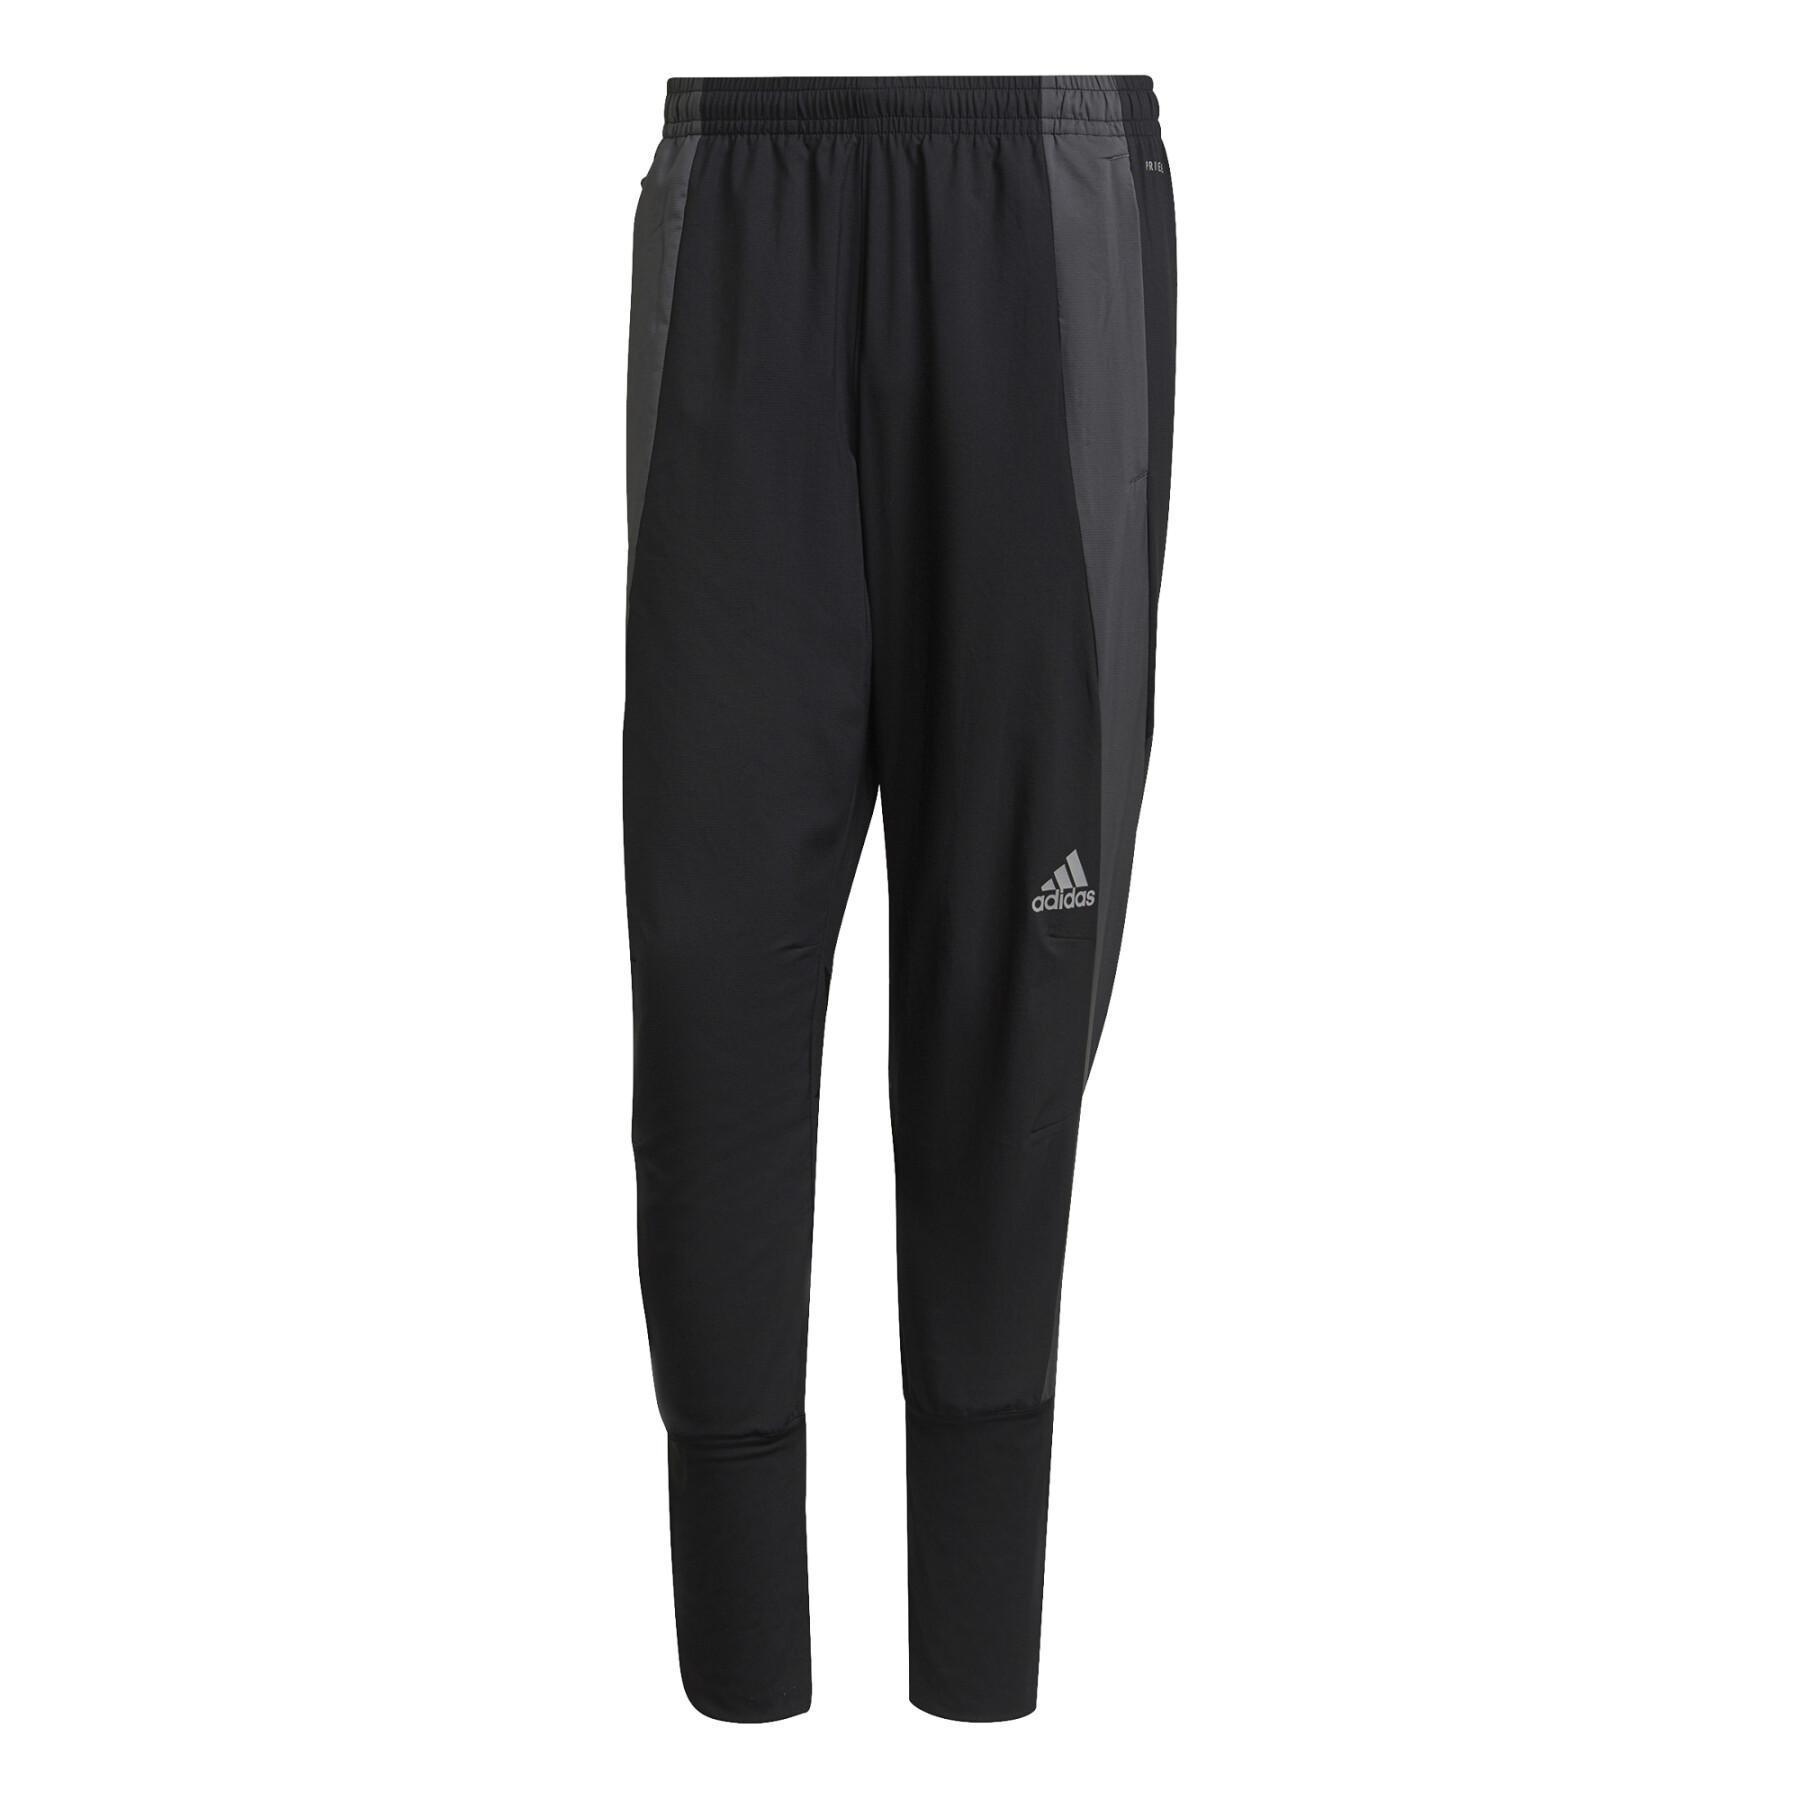 Pantalon de jogging adidas Adizero Marathon